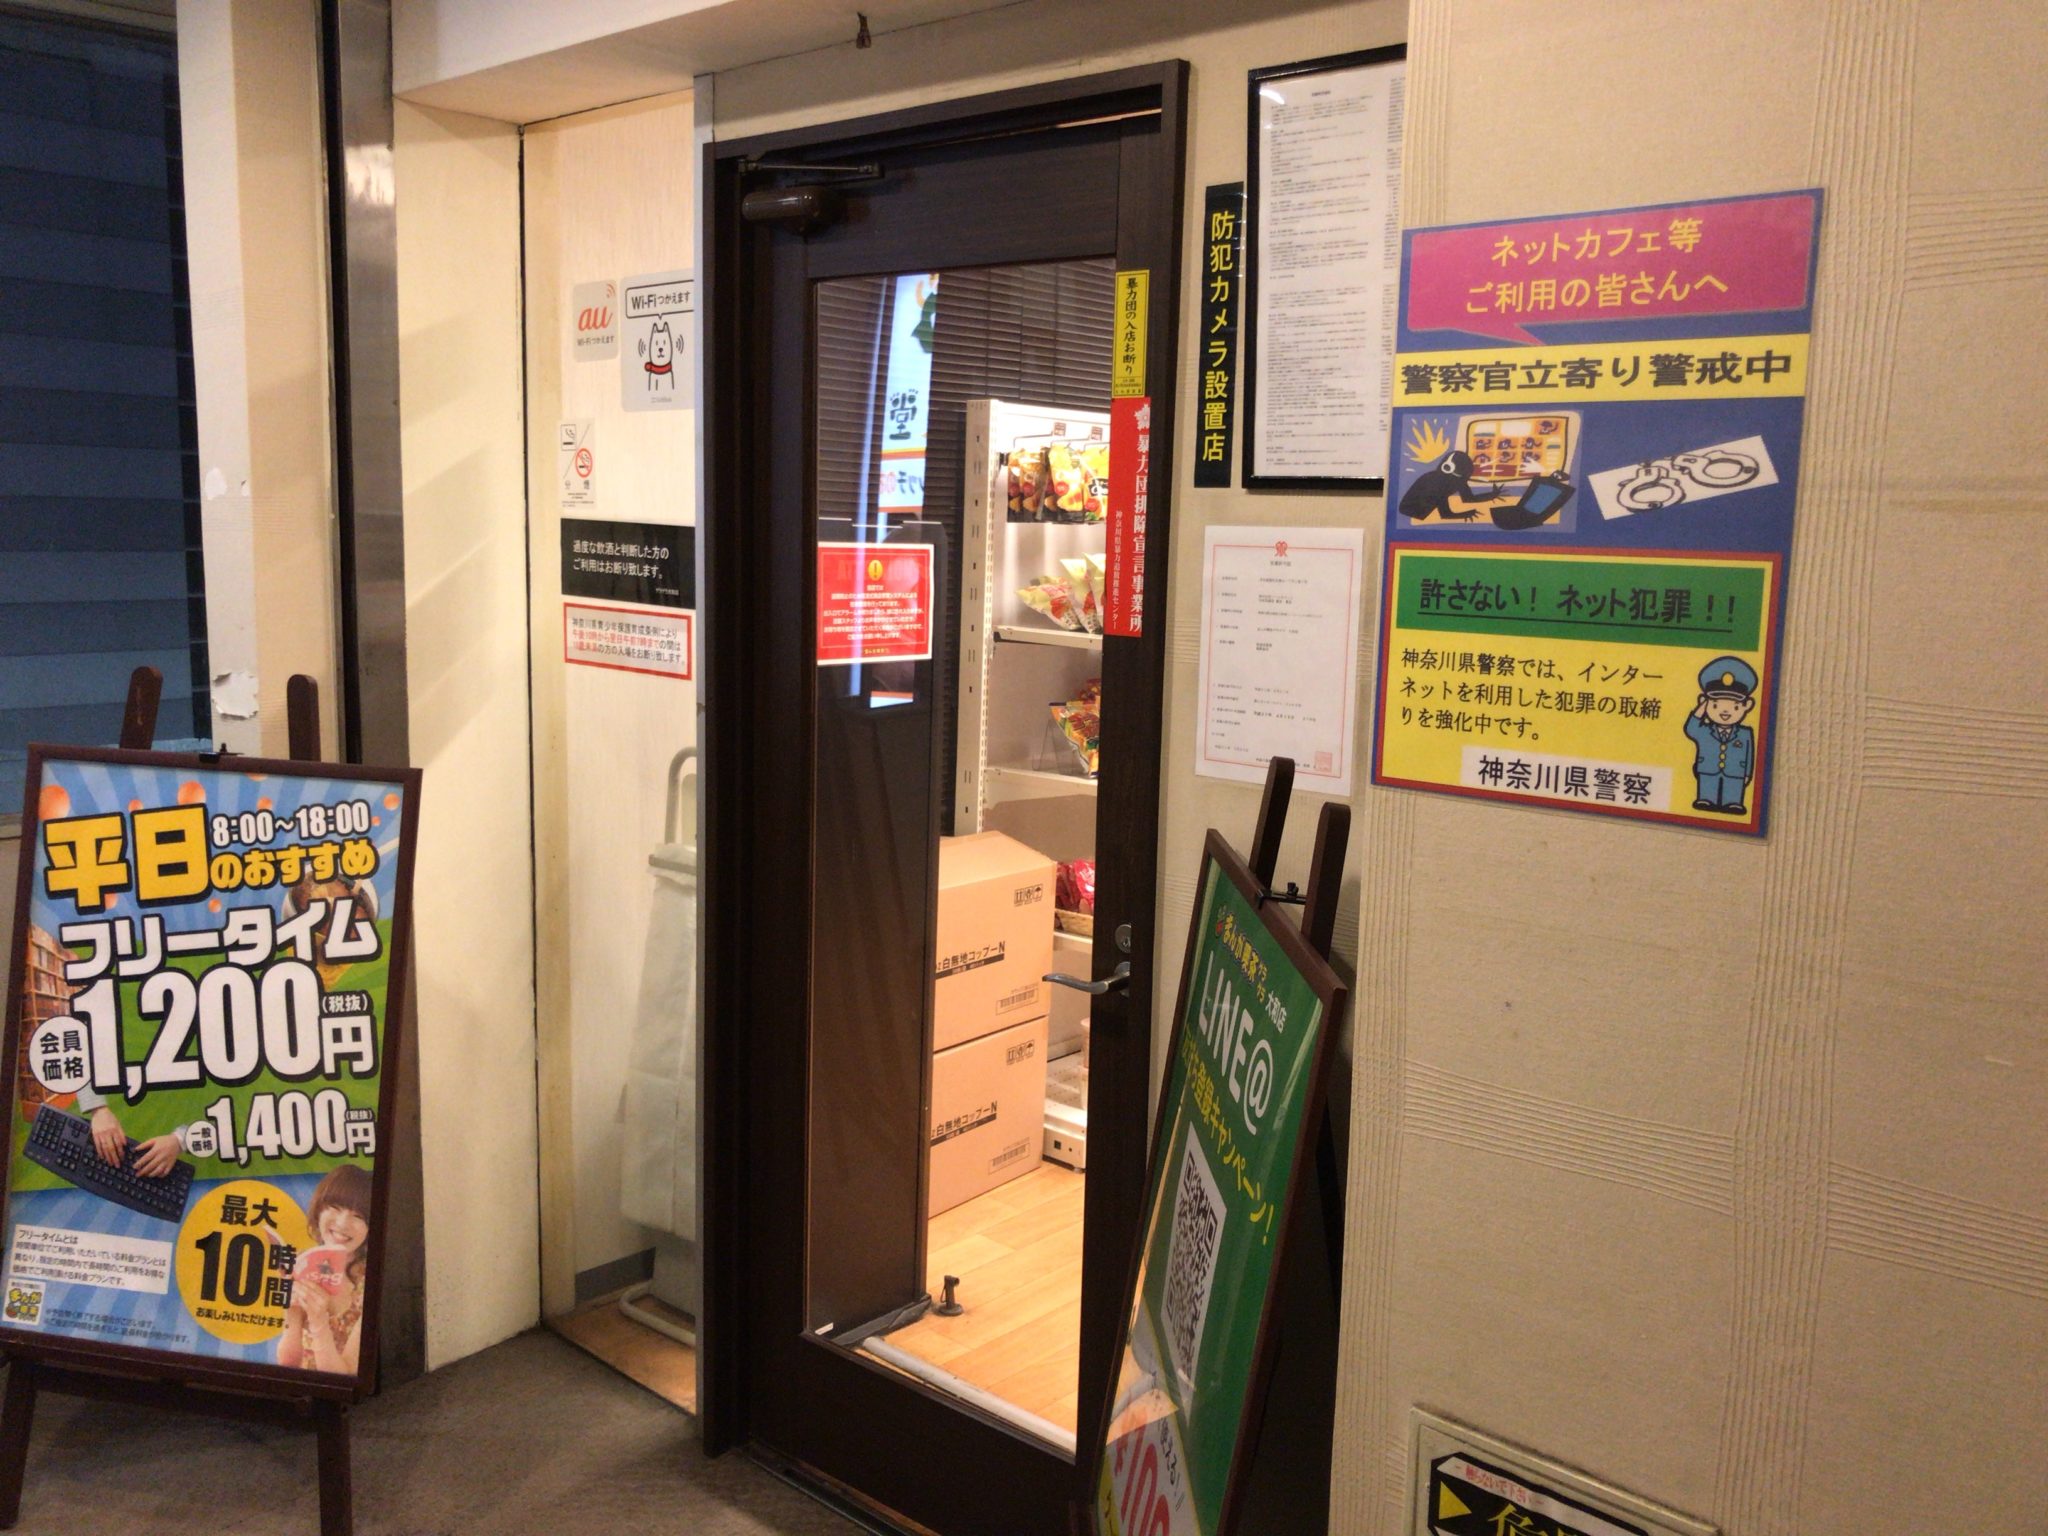 大和駅から徒歩2分 まんが喫茶ゲラゲラ大和店をレポート 日本全国のネカフェ 漫画喫茶マップのヒマップ